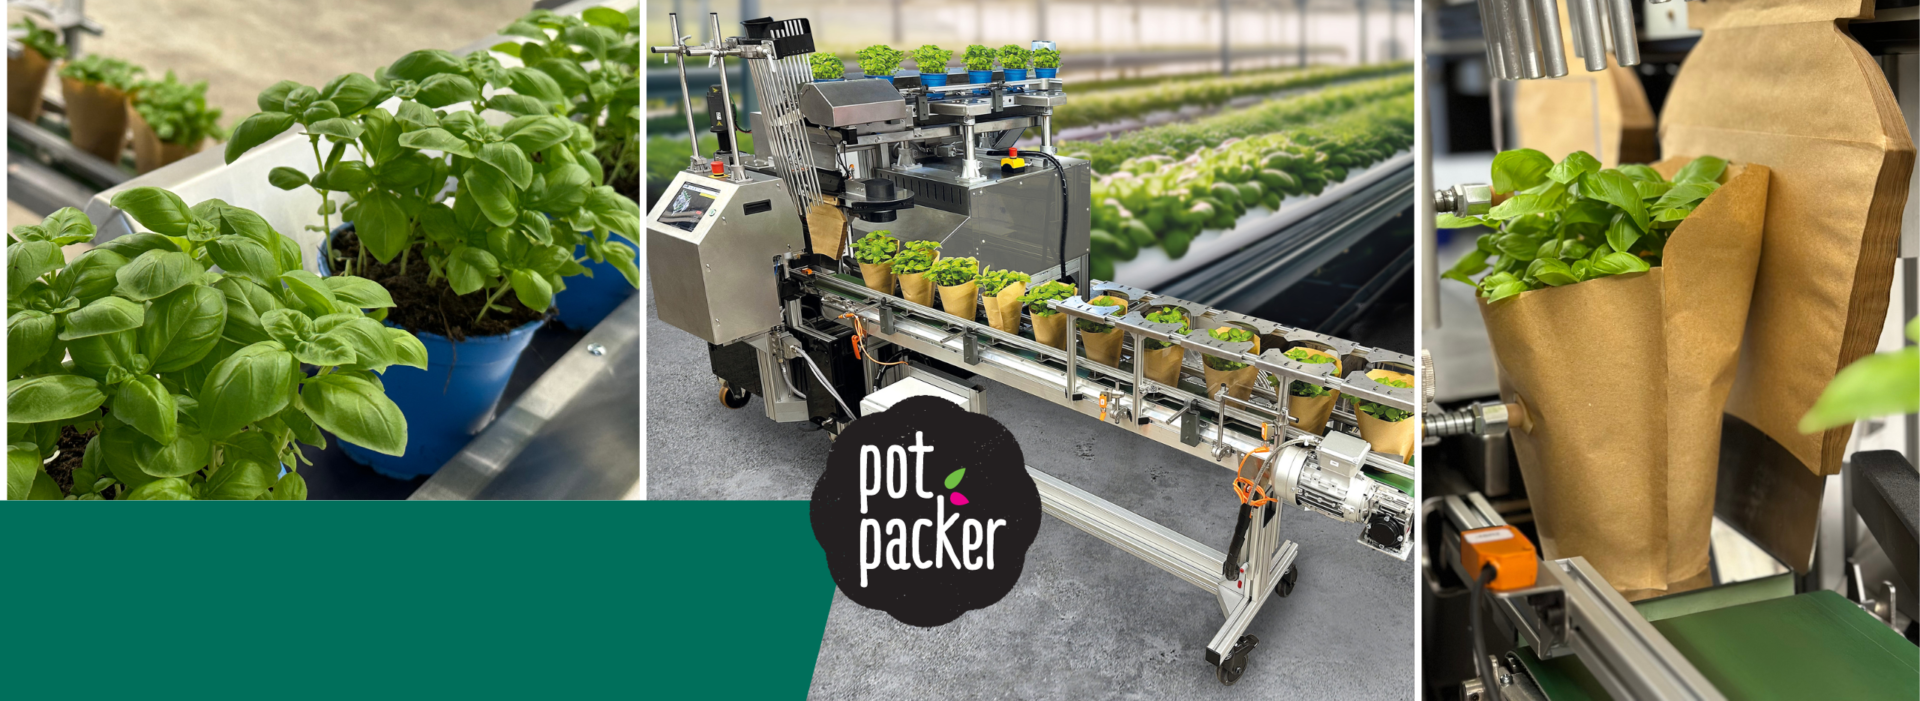 Der pot packer von WEBER Verpackungen - die innovative Verpackungsmaschine für Topfpflanzen, Blumen und Kräuter